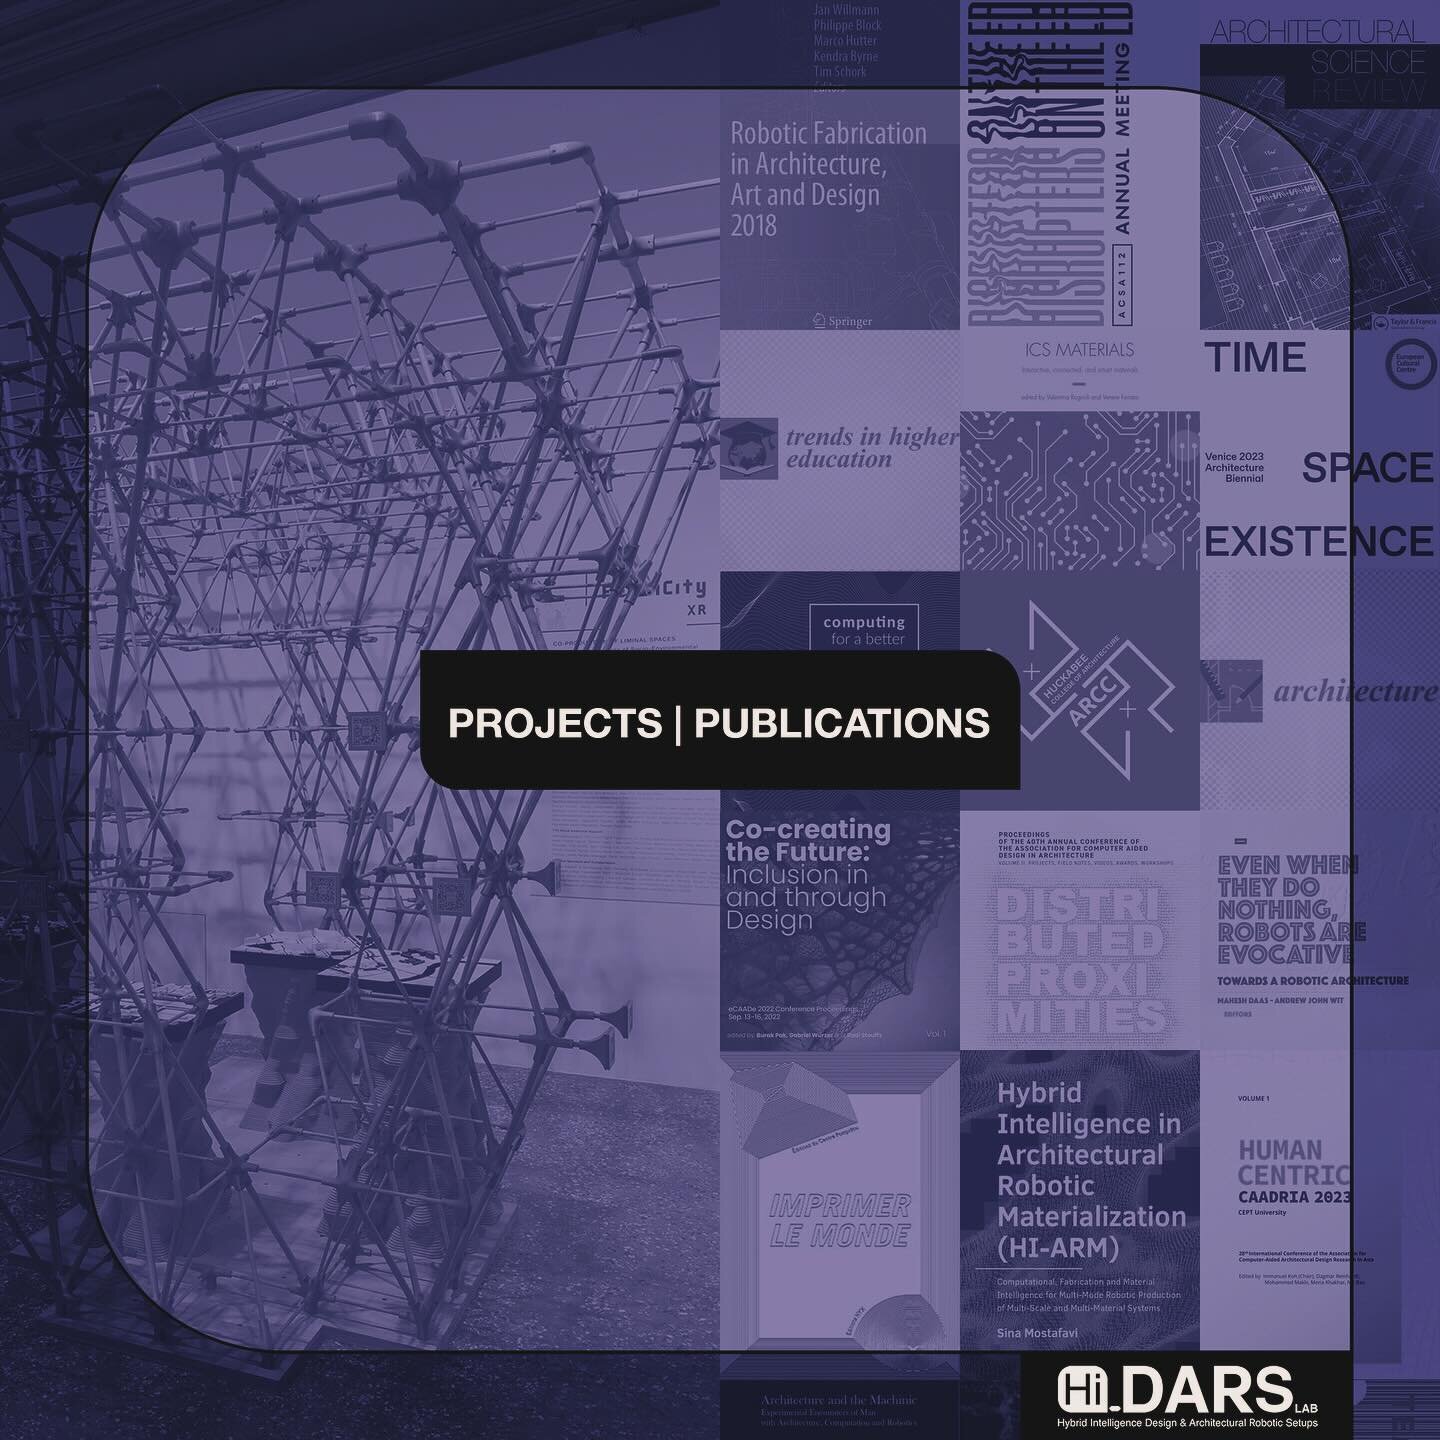 hi-dars.org/publications | hi-dars.org/projects

Hi-DARS lab&rsquo;s PROJECTS &amp; PUBLICATIONS 

Visit www.Hi-DARS.org to explore our PROJECTS &amp; PUBLICATIONS. 
Our DESIGN | RESEARCH | BUILD PROJECTS at HI-DARS  integrate diverse research stre